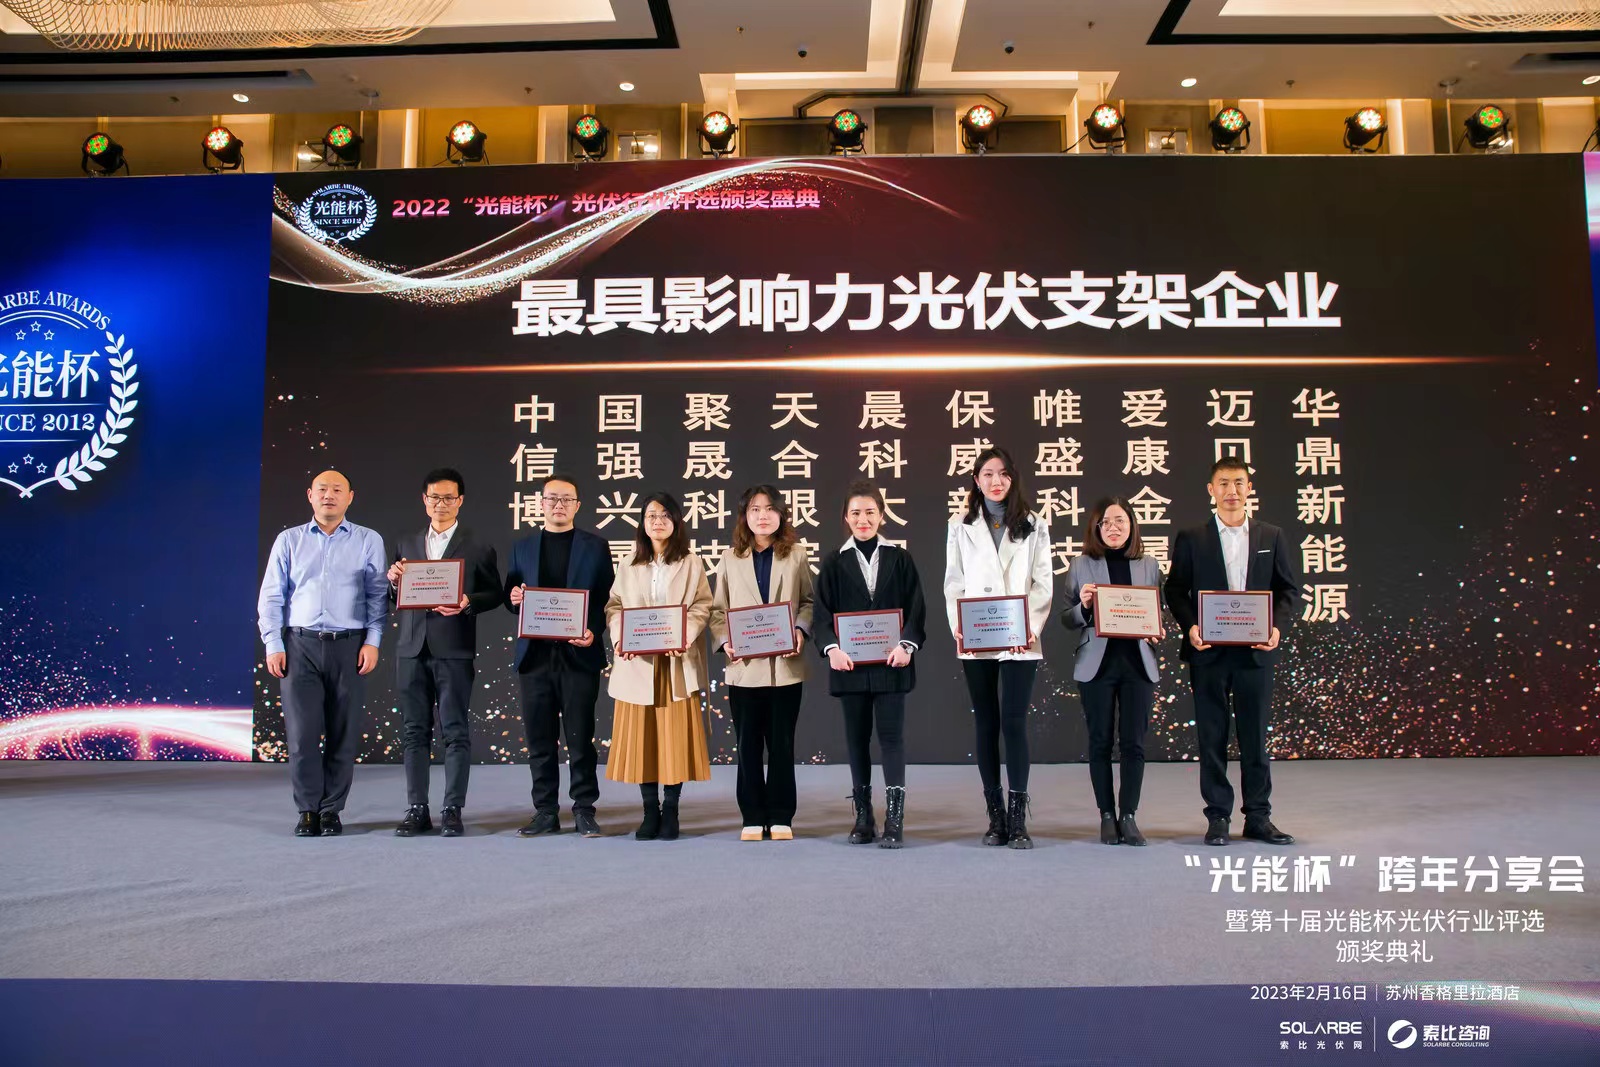 Selamat!Shanghai CHIKO memenangkan perusahaan braket surya paling berpengaruh pada tahun 2022